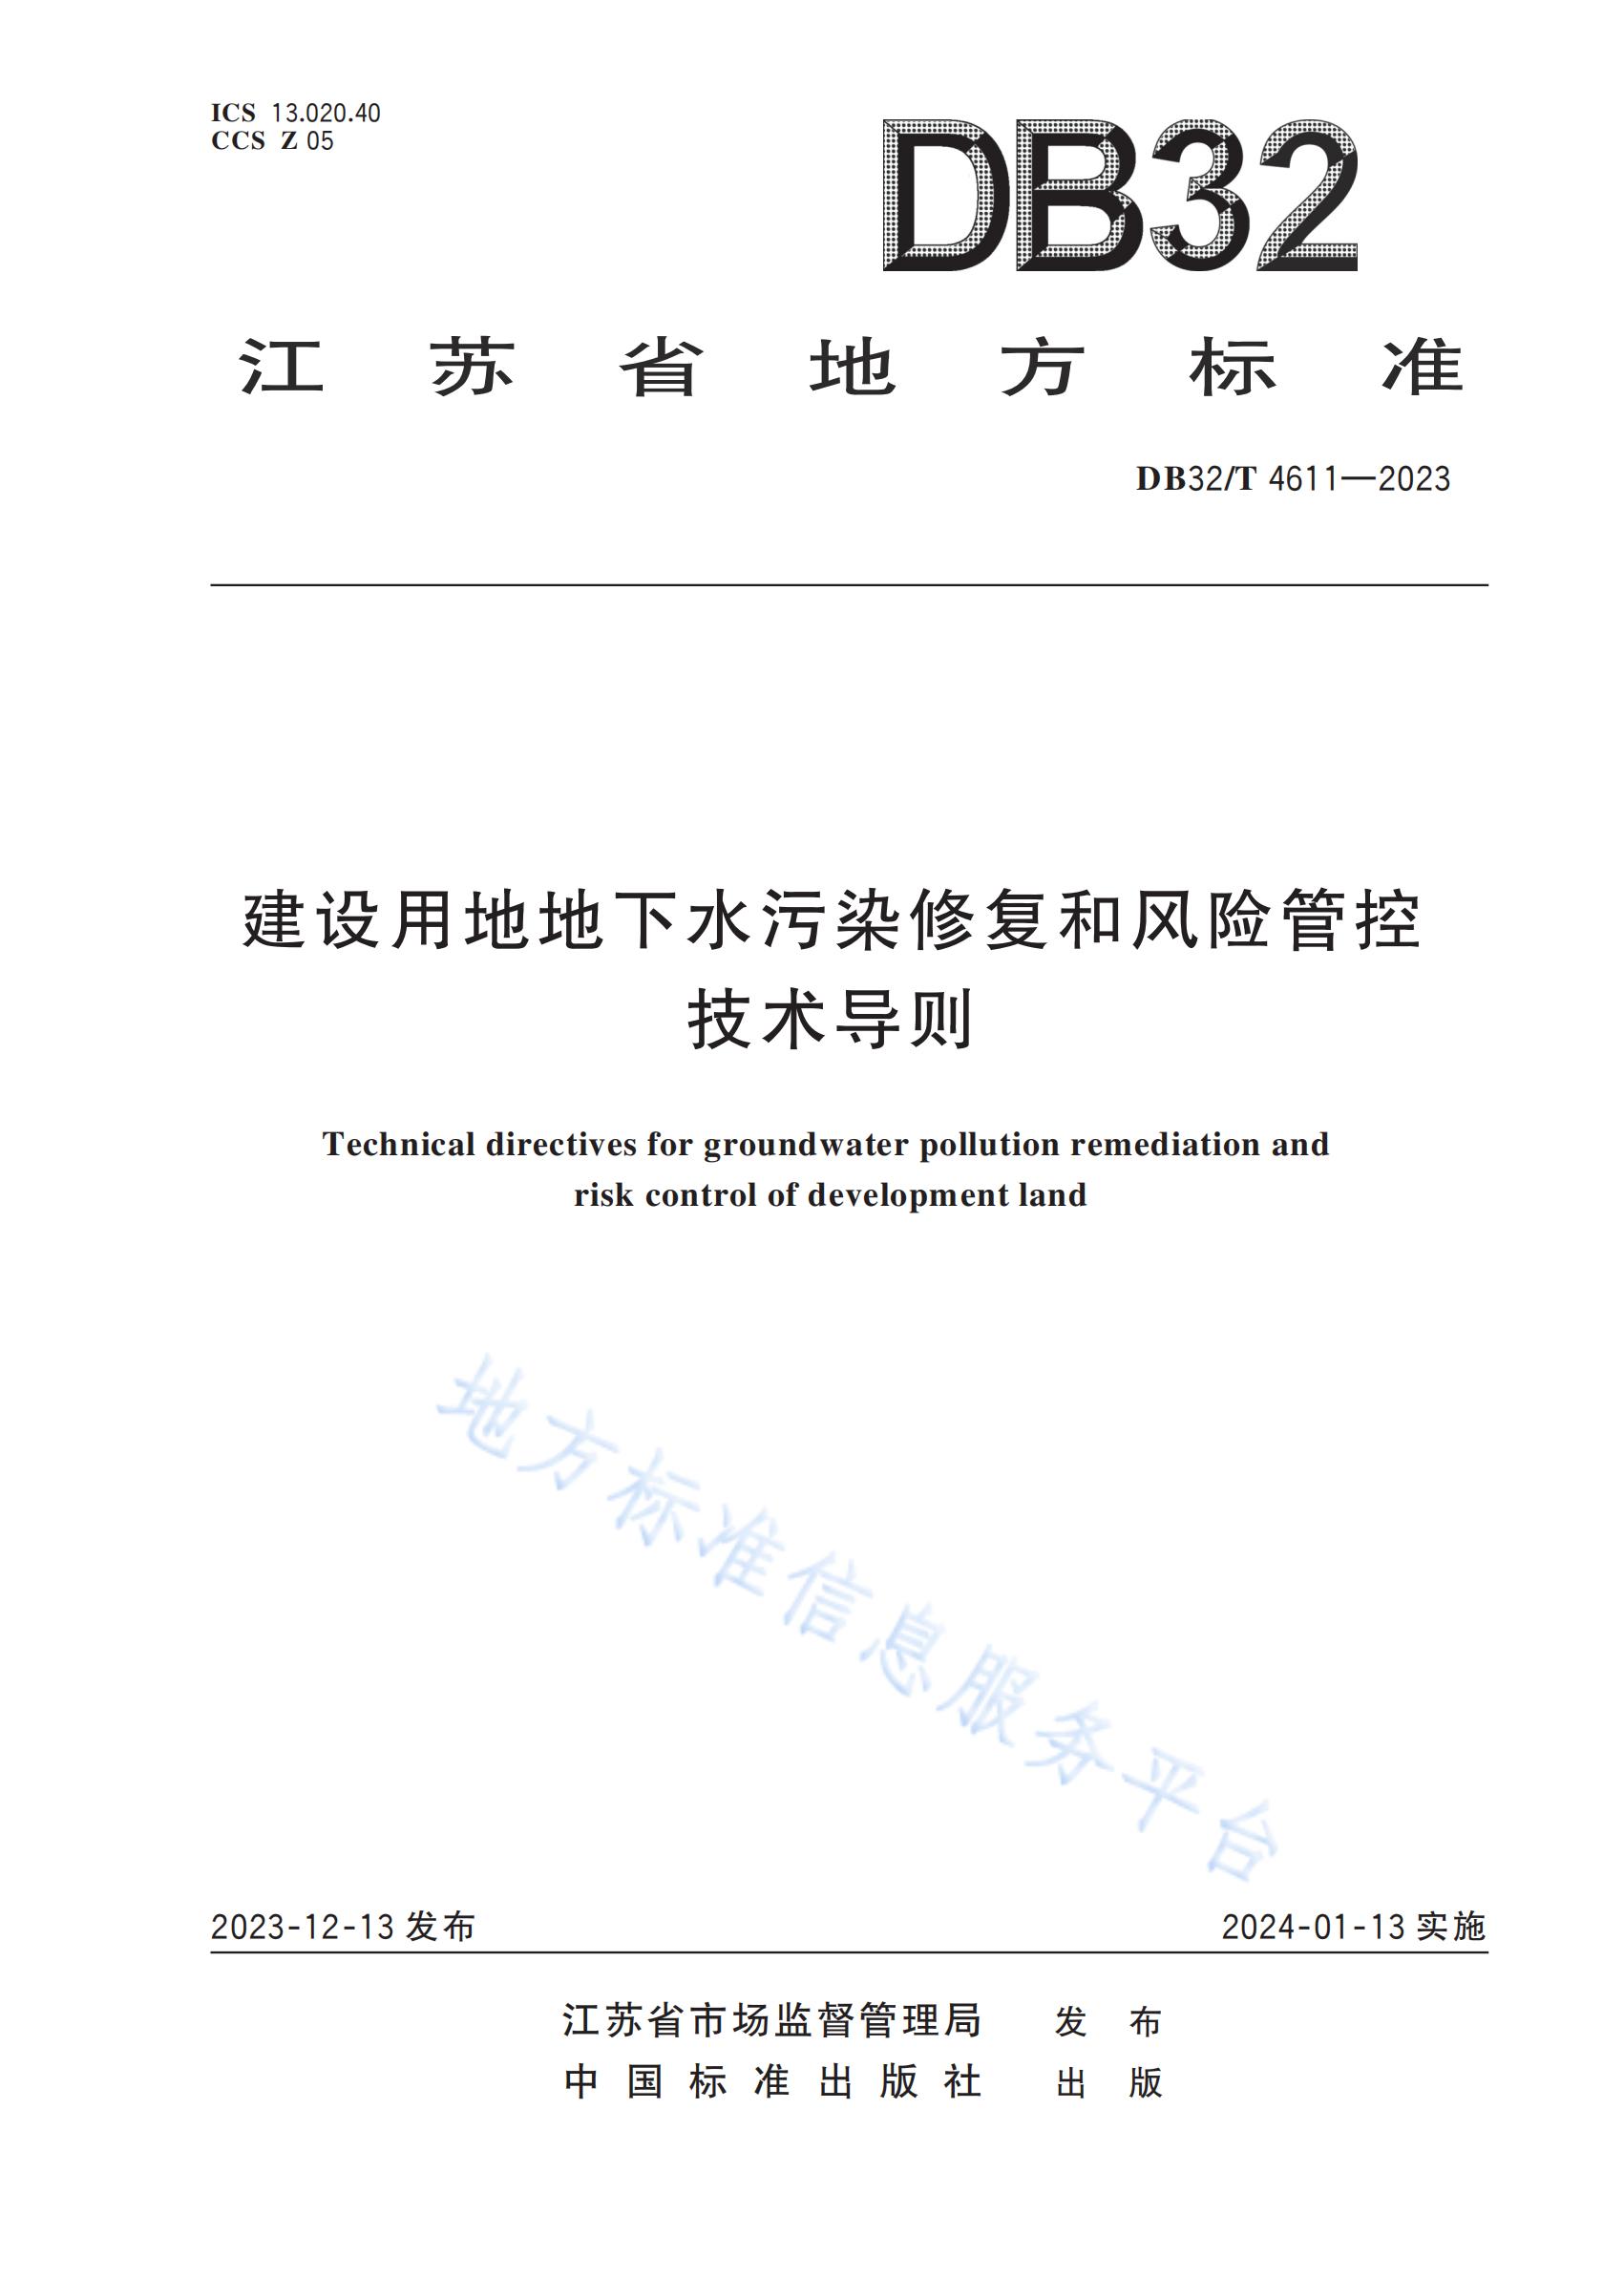 江苏省《建设用地地下水污染修复和风险管控技术导则》DB32/T 4611-2023